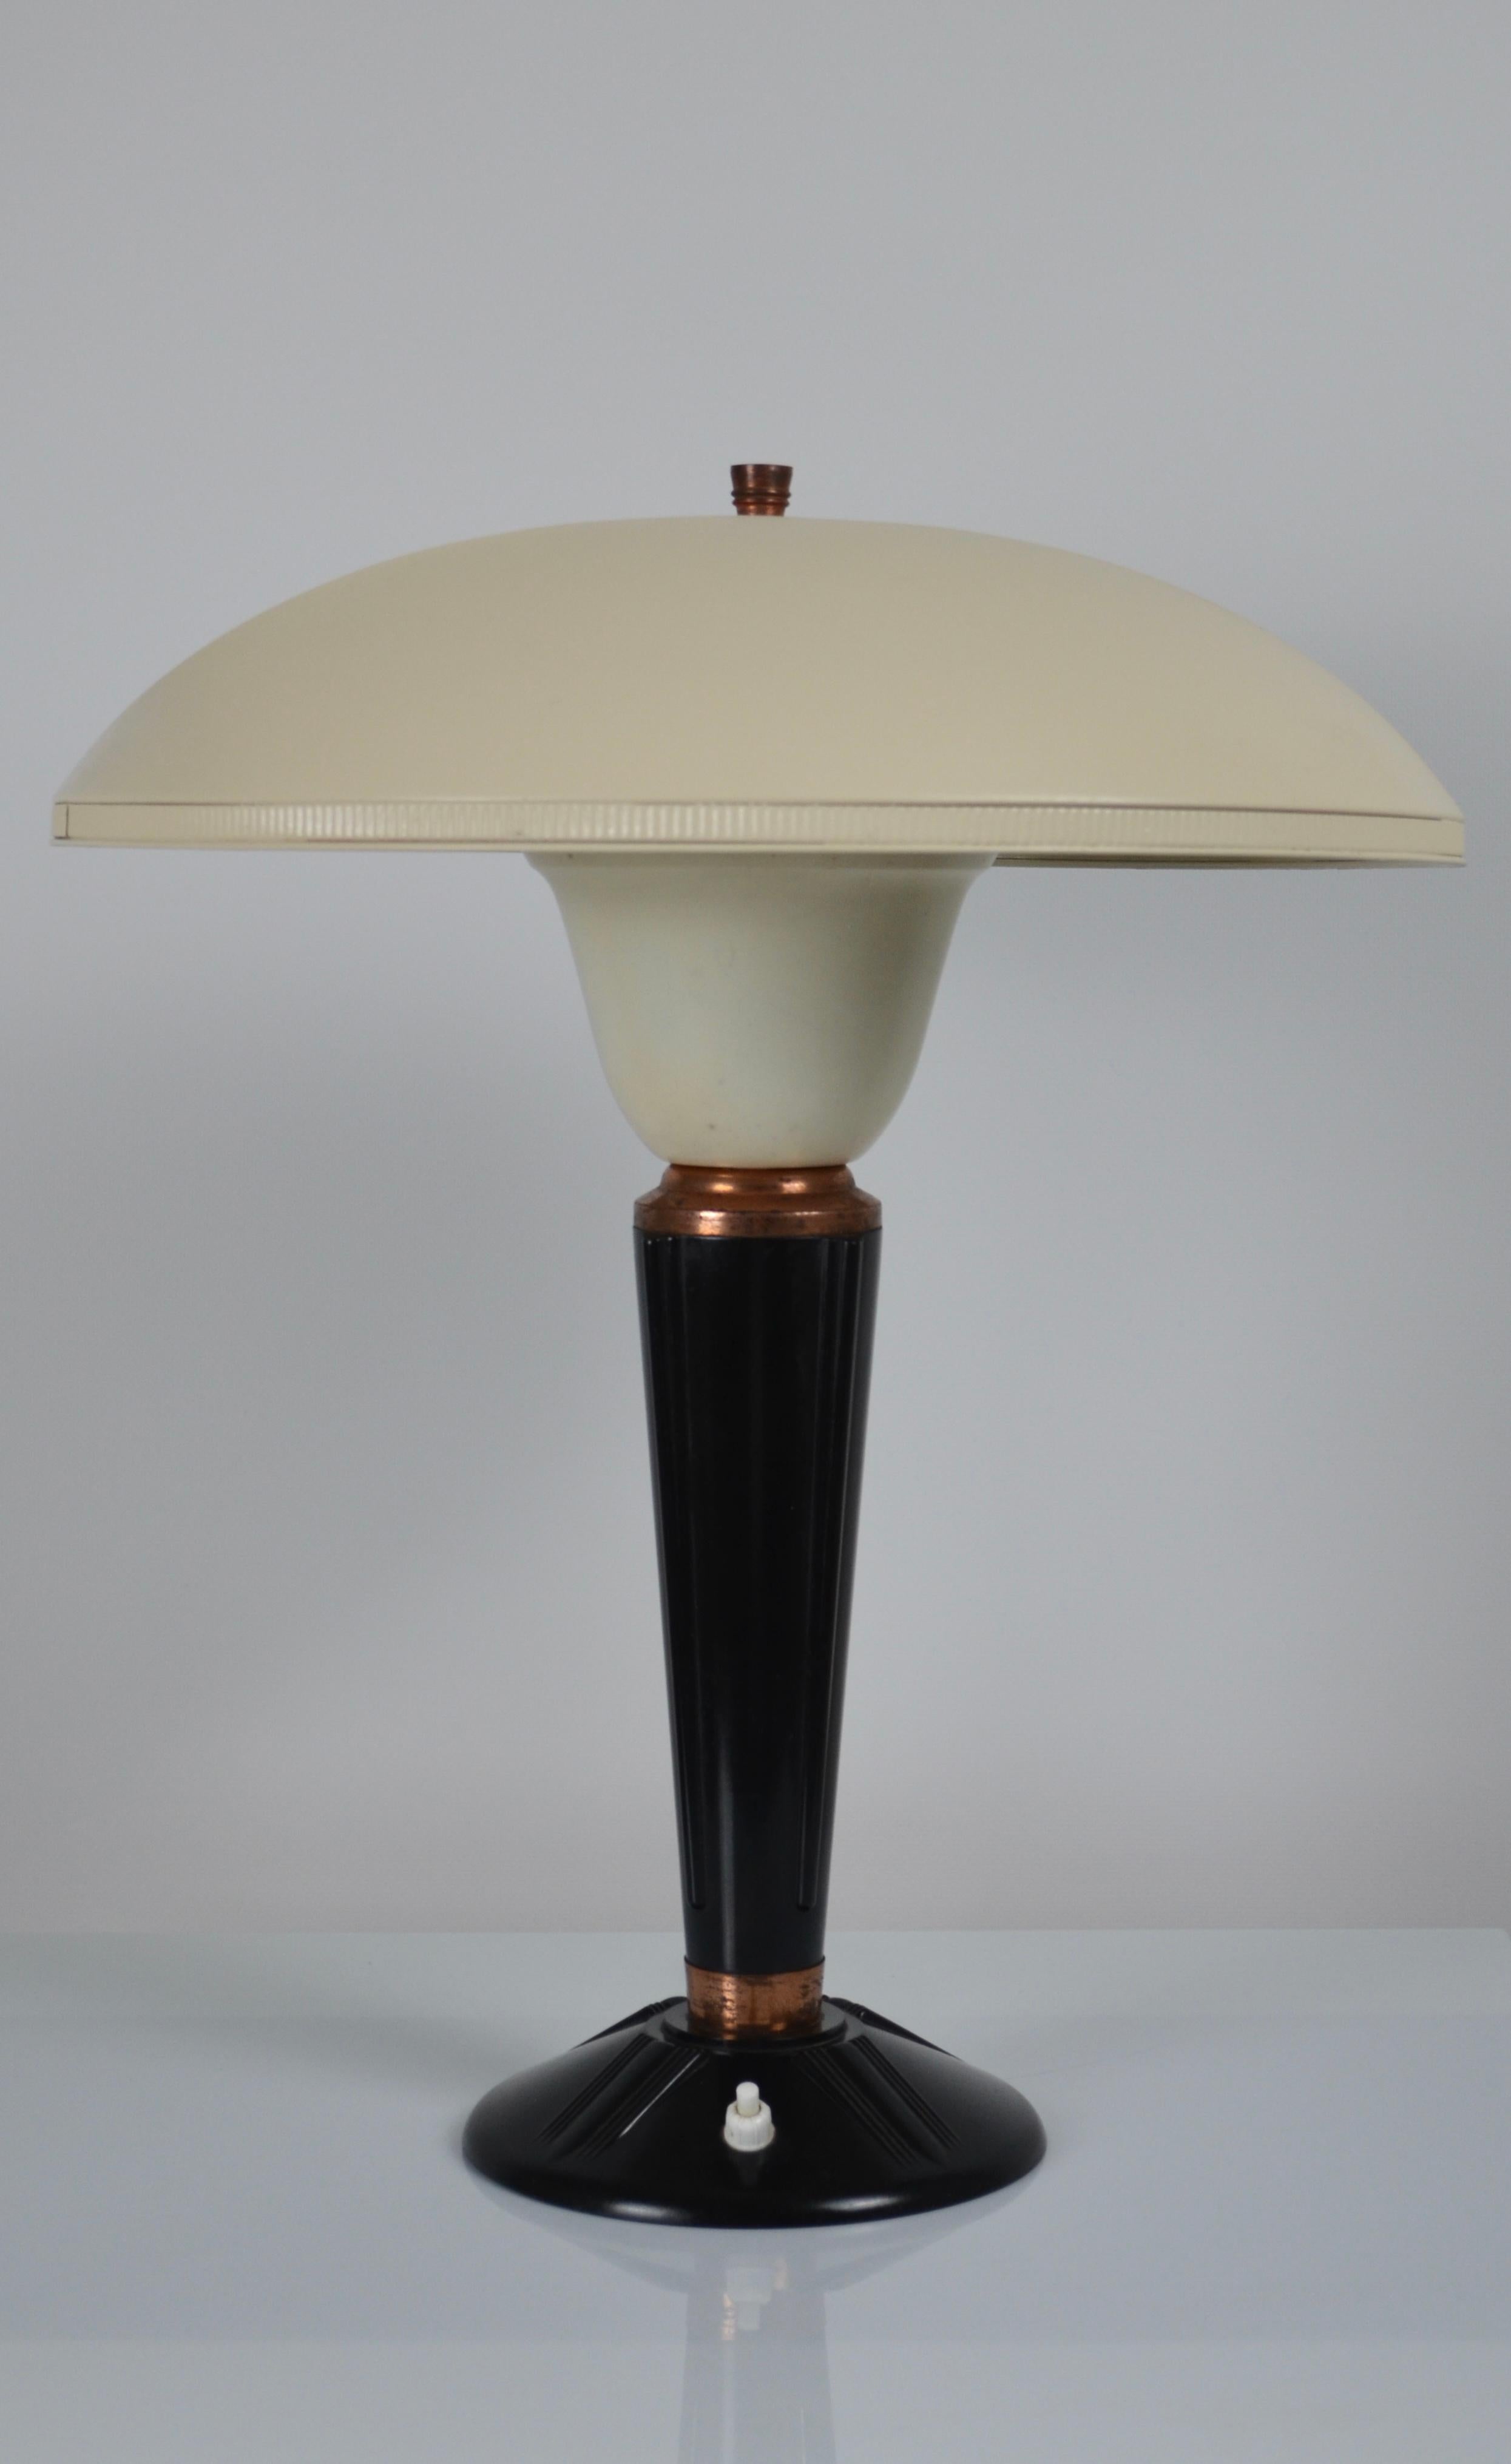 Bakelite lamp, model 320, Jumo brand, France, 1940s For Sale 2